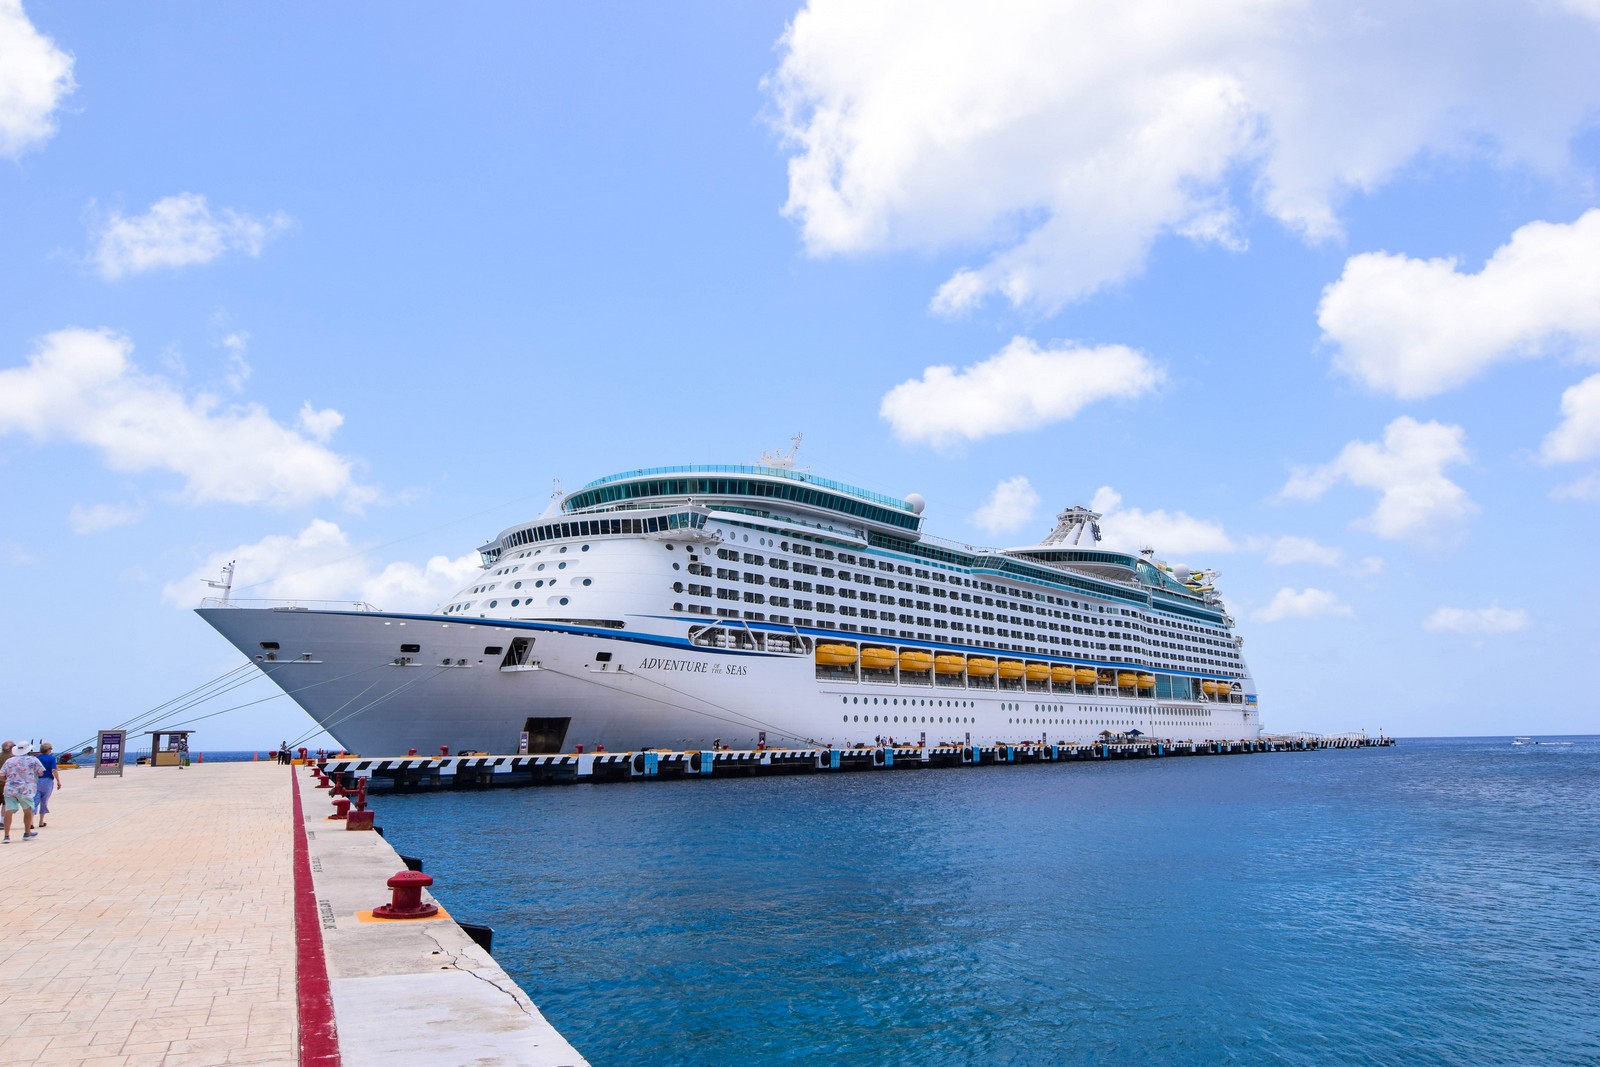 Children Test Positive for Coronavirus on Cruise Ship